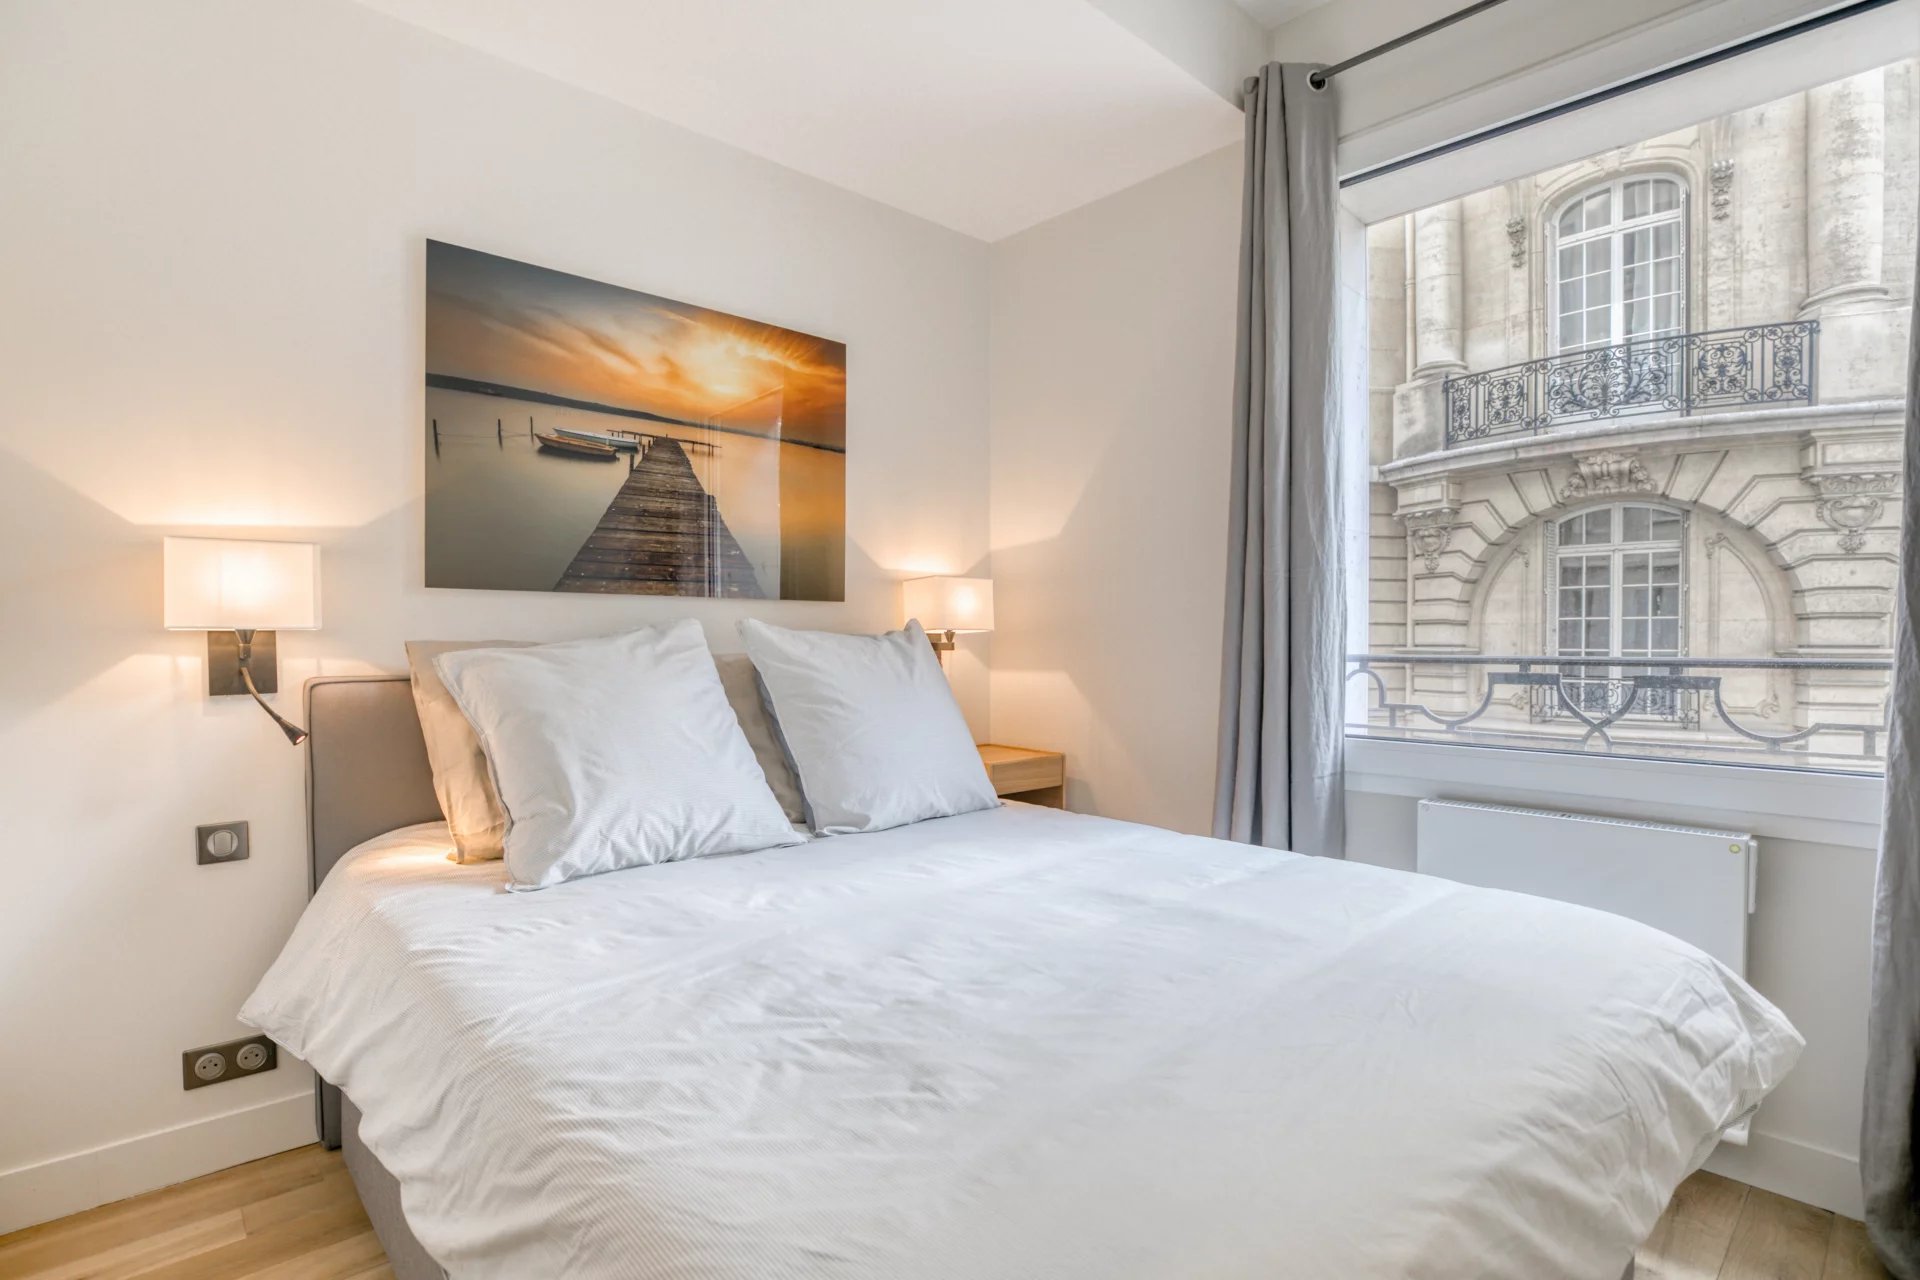 Sale Apartment - Paris 8th (Paris 8ème)